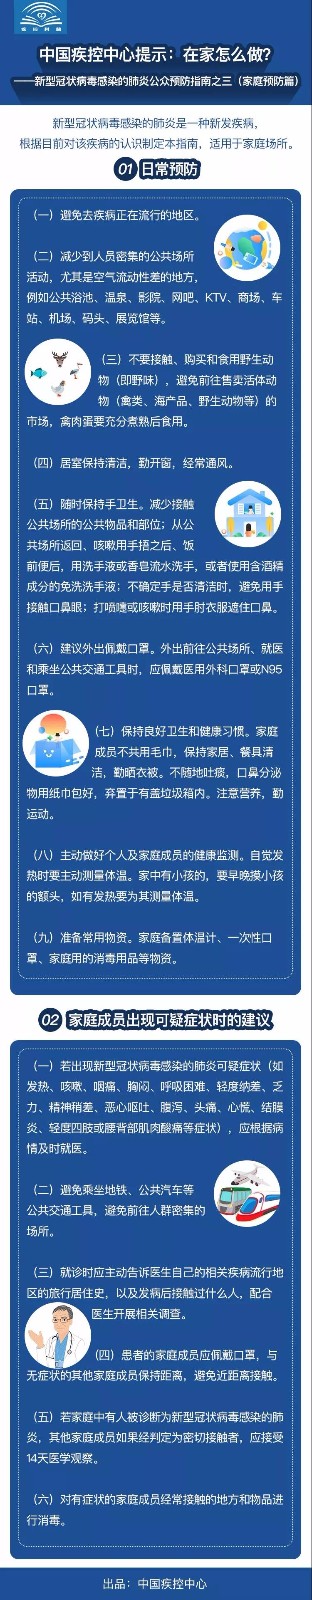 中国疾控中心权威提示：新型冠状病毒感染的肺炎公众预防指南，跟着做起来！ | 特别关注